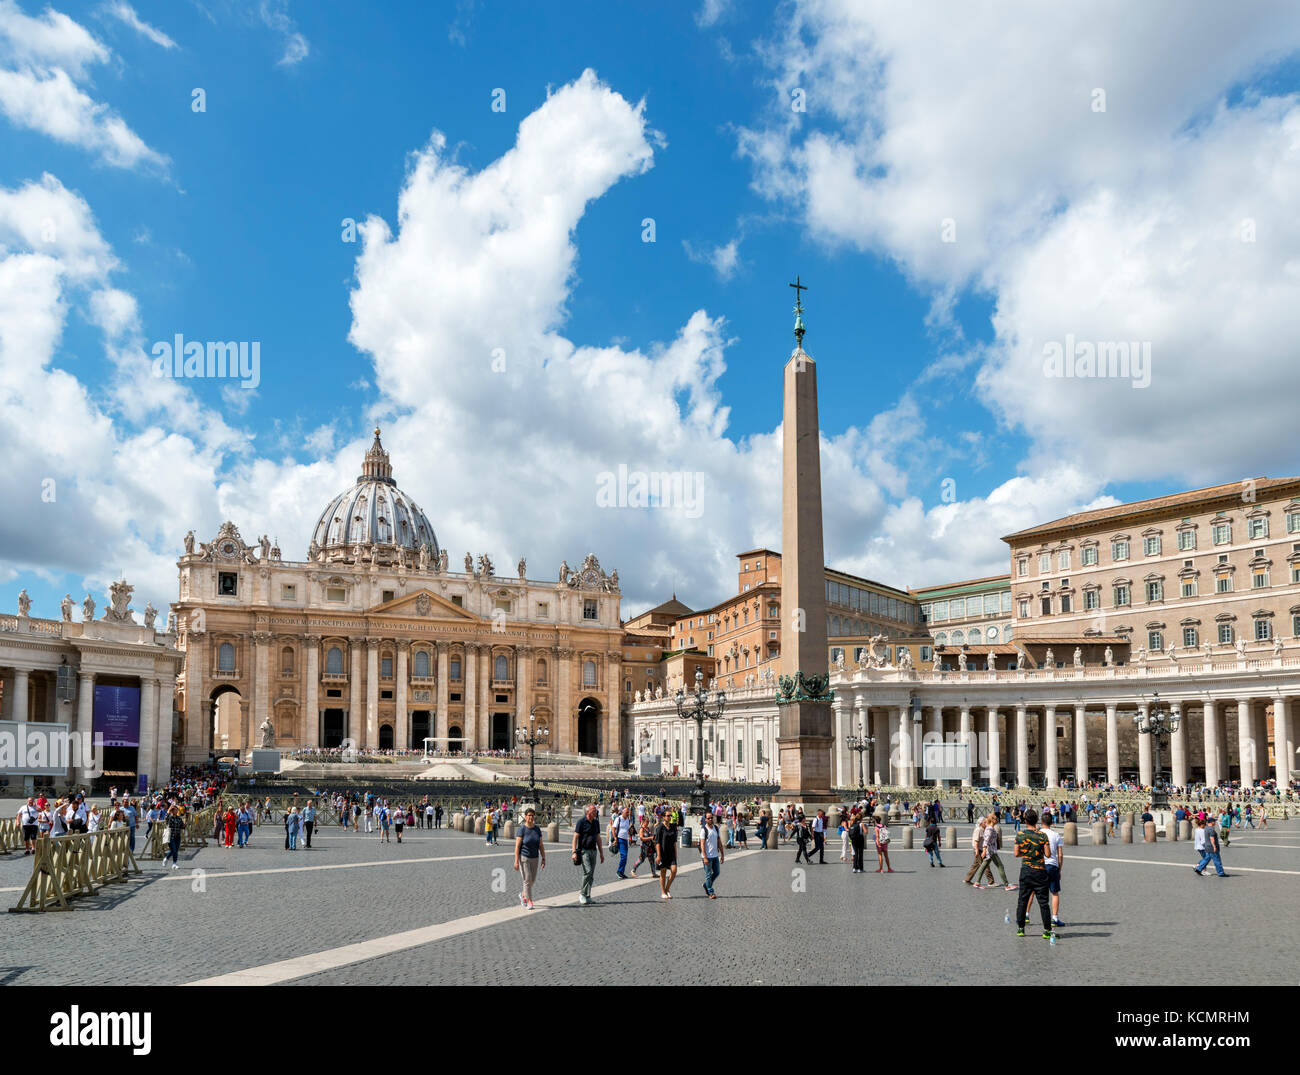 La basilique Saint Pierre et Saint Peter's square, Vatican, Rome, Italie Banque D'Images